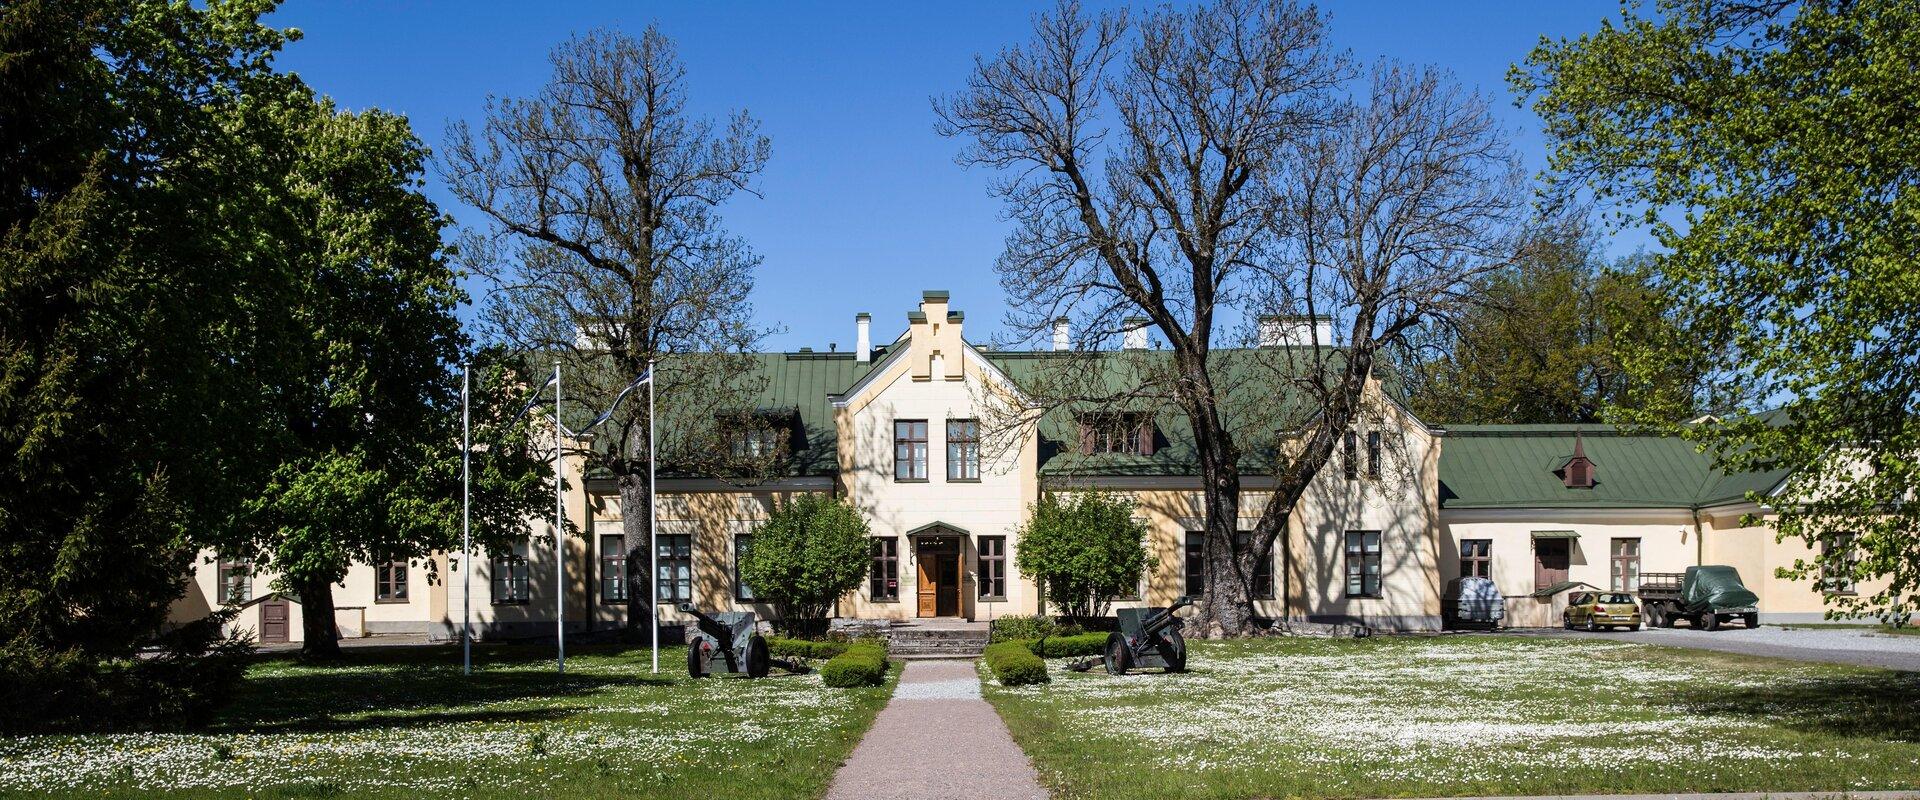 Eesti sõjamuuseum - kindral Laidoneri muuseum